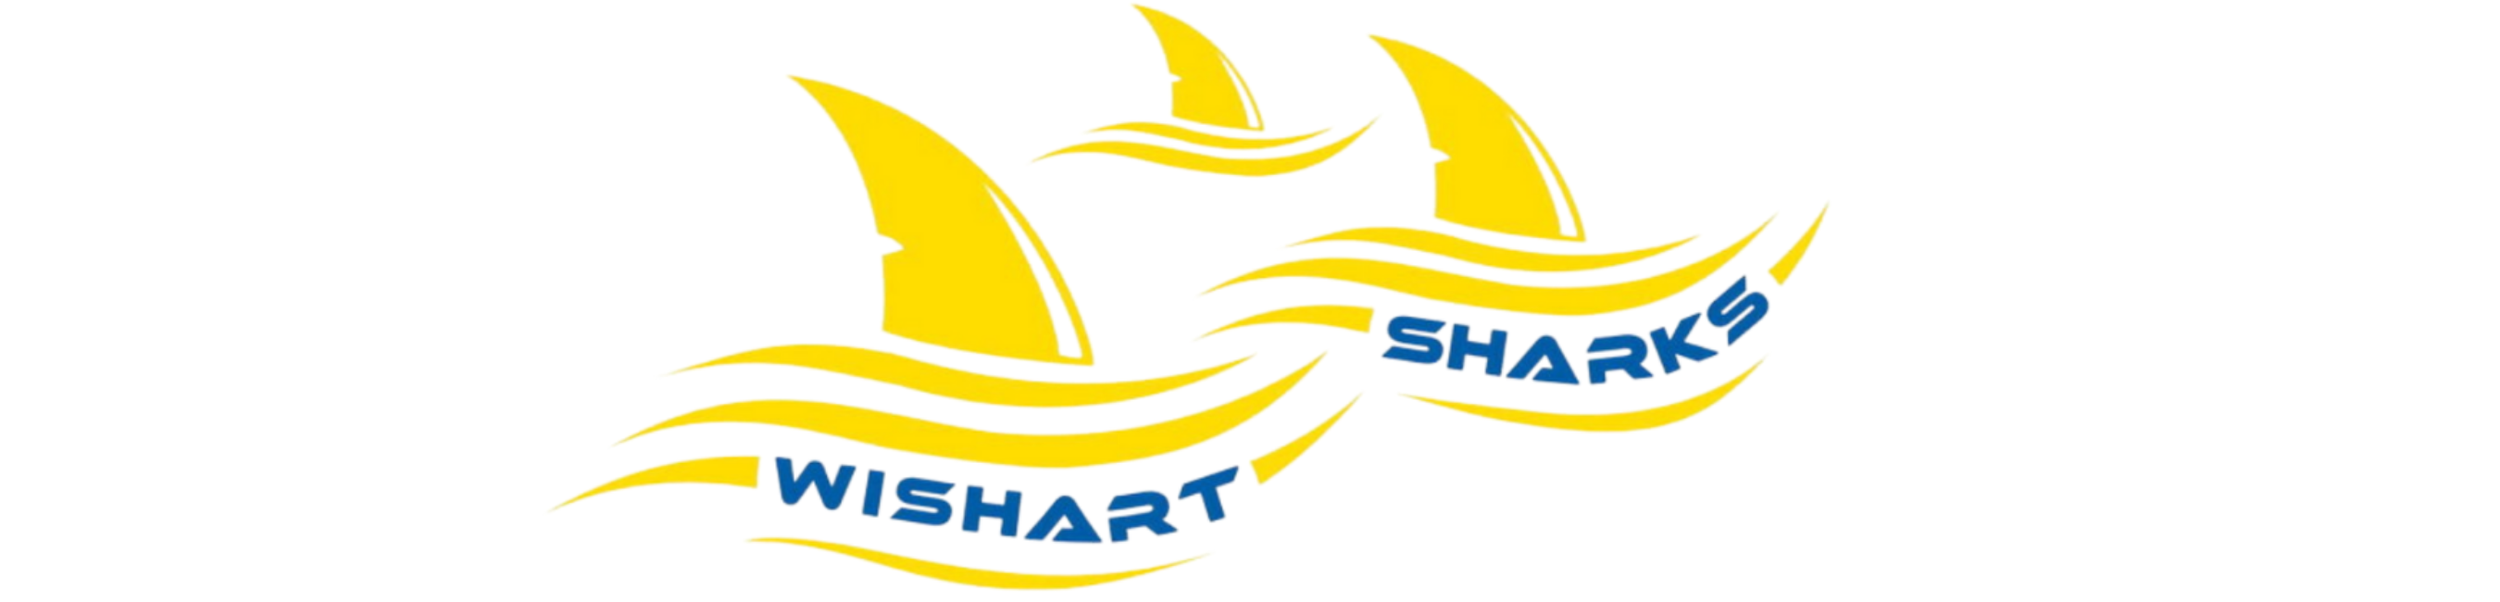 Wishart Sharks Banner (2700 x 650 px).png